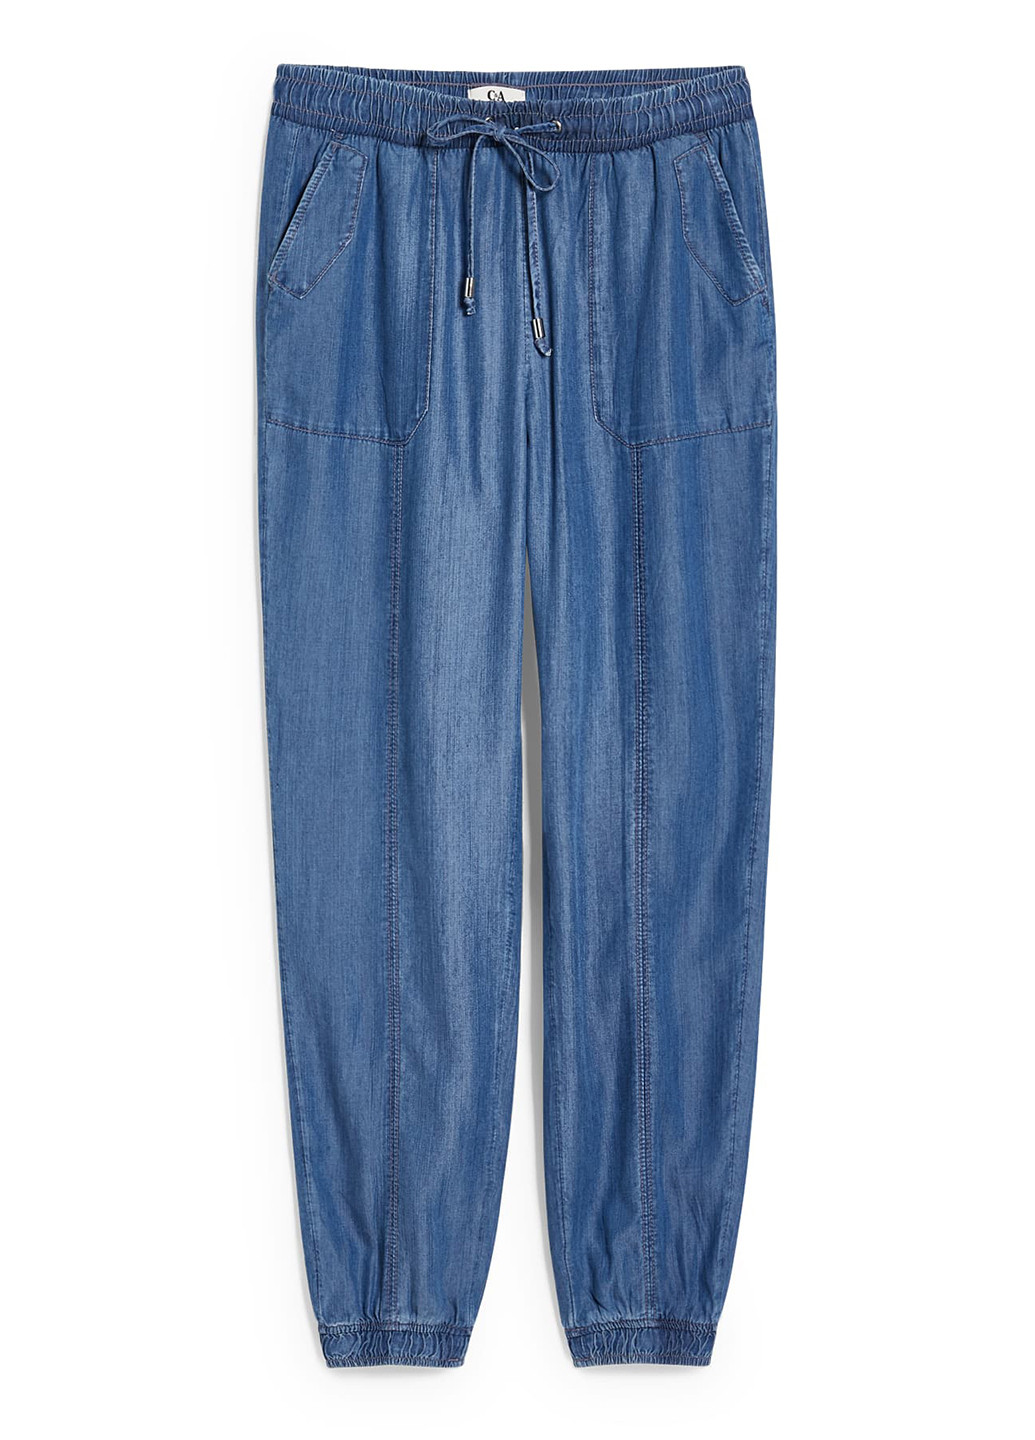 Синие джинсовые летние джоггеры брюки C&A